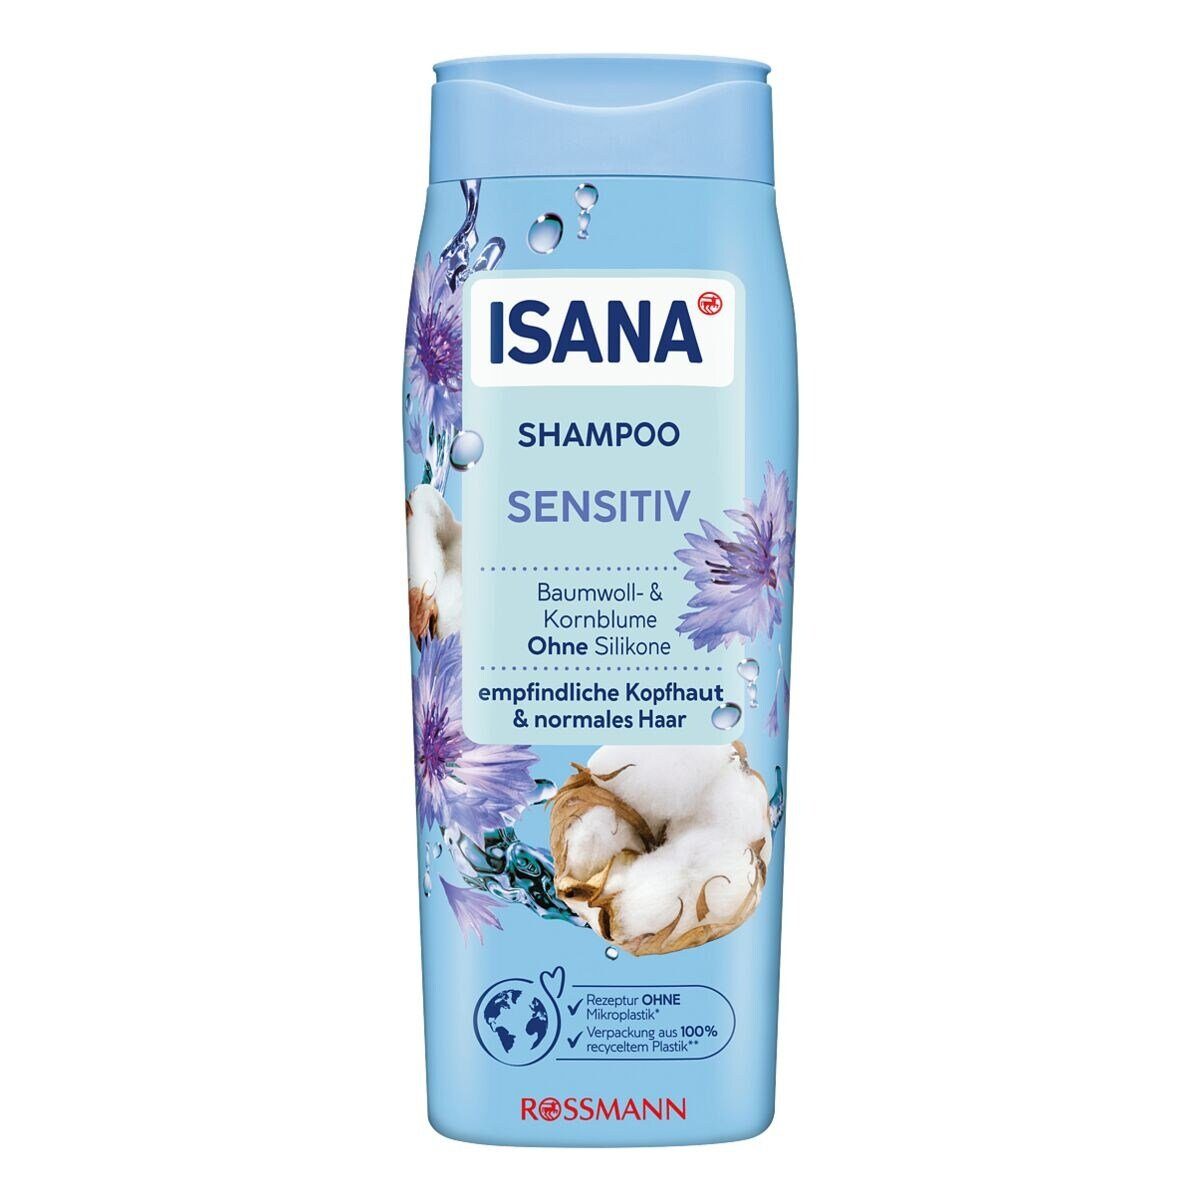 Flower ISANA Kopfhaut Haar für Haarshampoo Sensitiv normales und Cotton empfindliche Kornblume, &